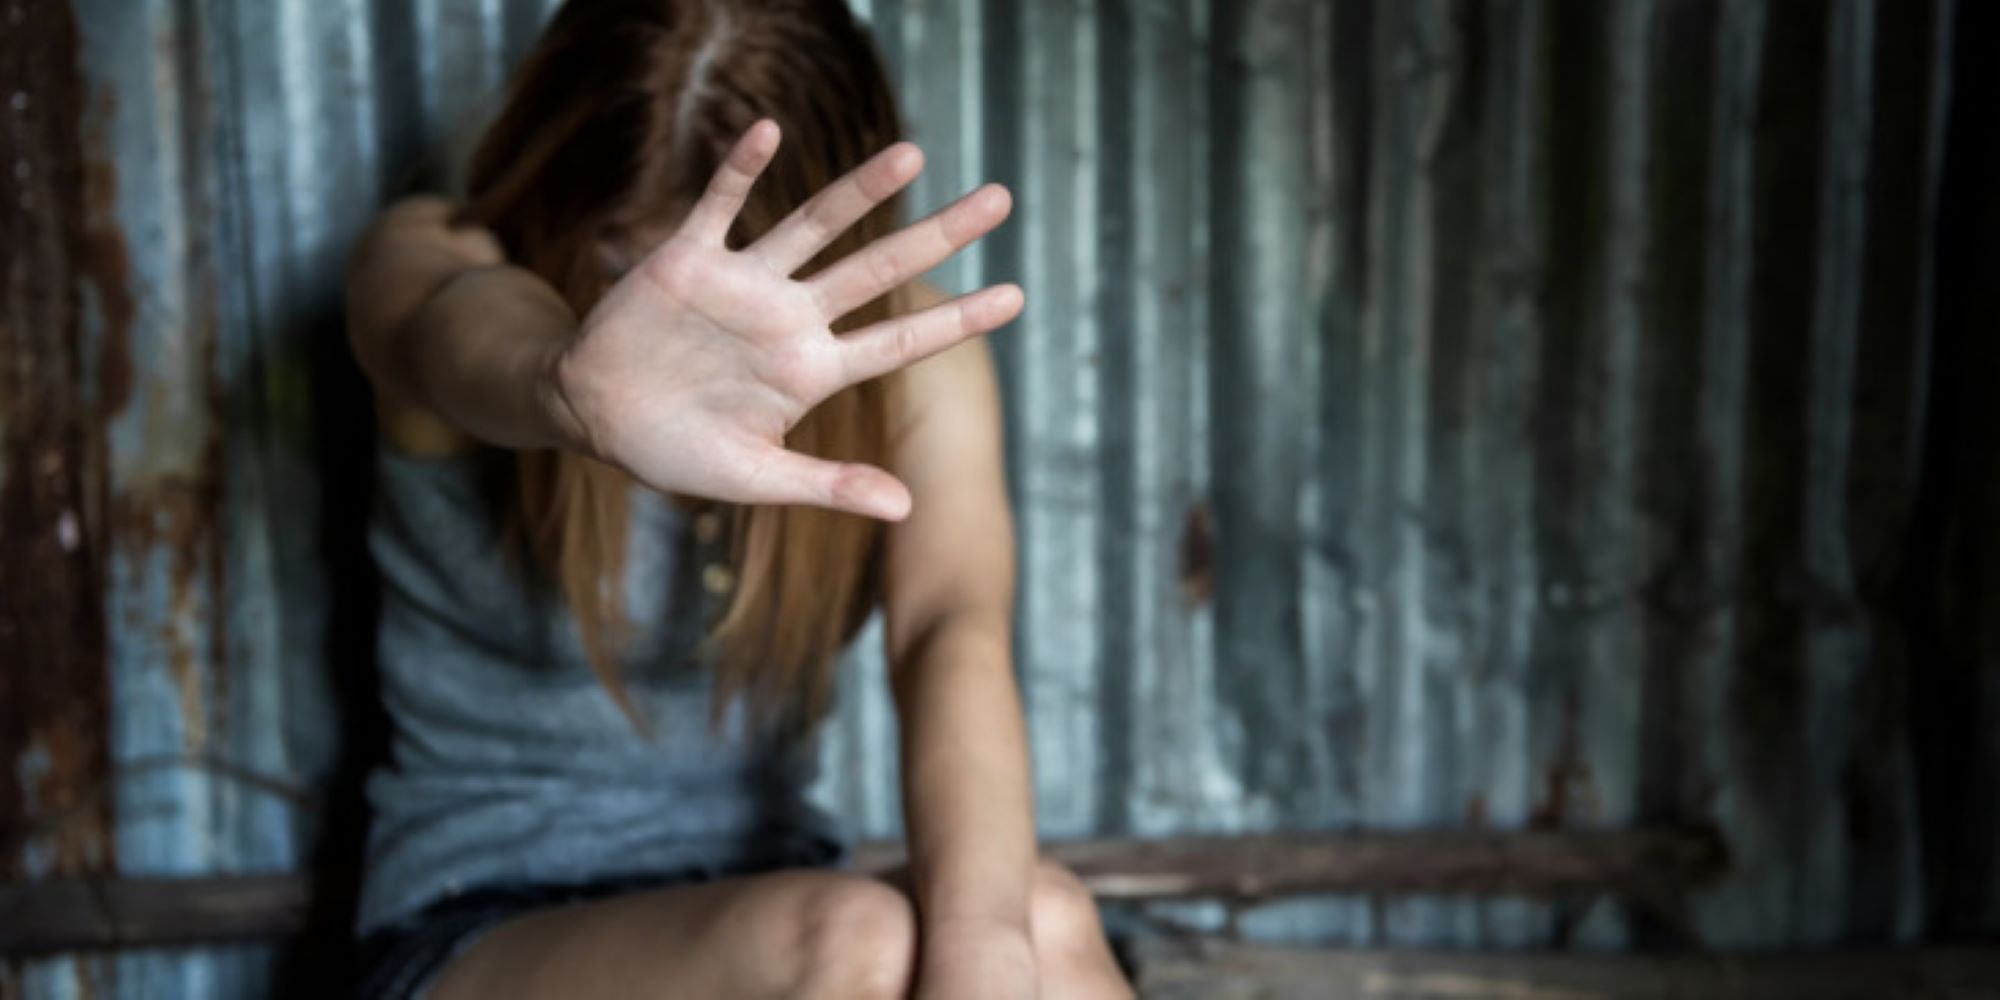 Αναμορφωτικά μέτρα σε τέσσερις ανήλικους για σεξουαλική κακοποίηση 14χρονης στη Θεσσαλονίκη